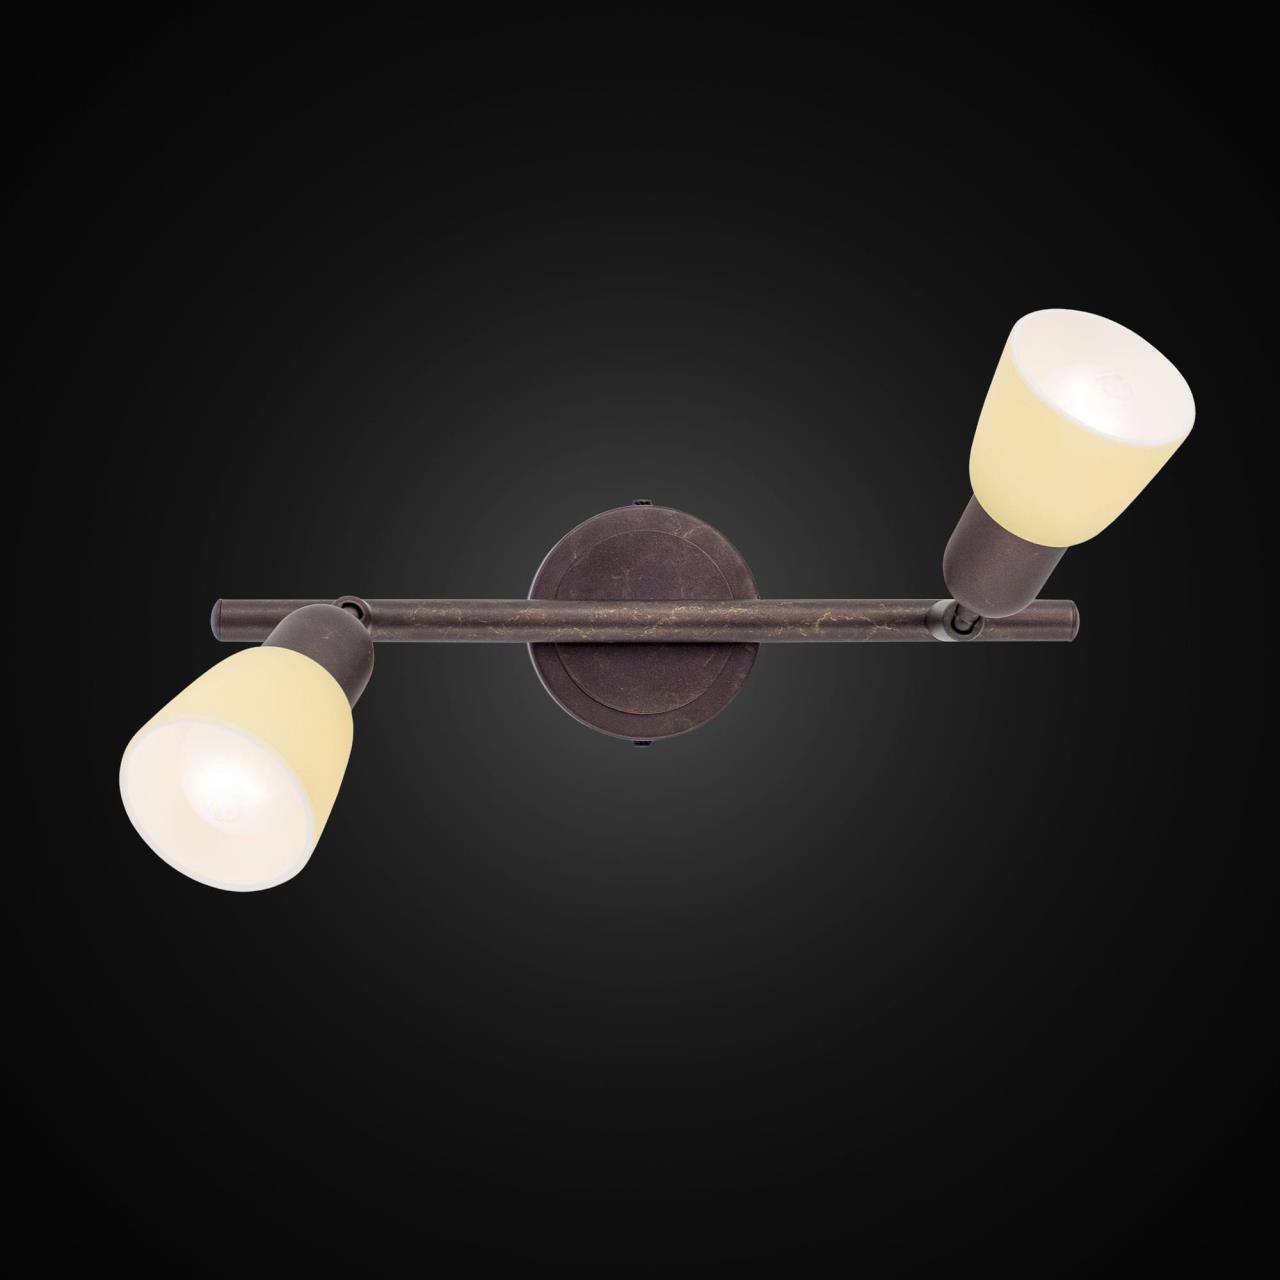 Потолочный светильник с регулировкой направления света Citilux Ронда CL506524, 2xE14x60W, коричневый, бежевый, металл, стекло - фото 2